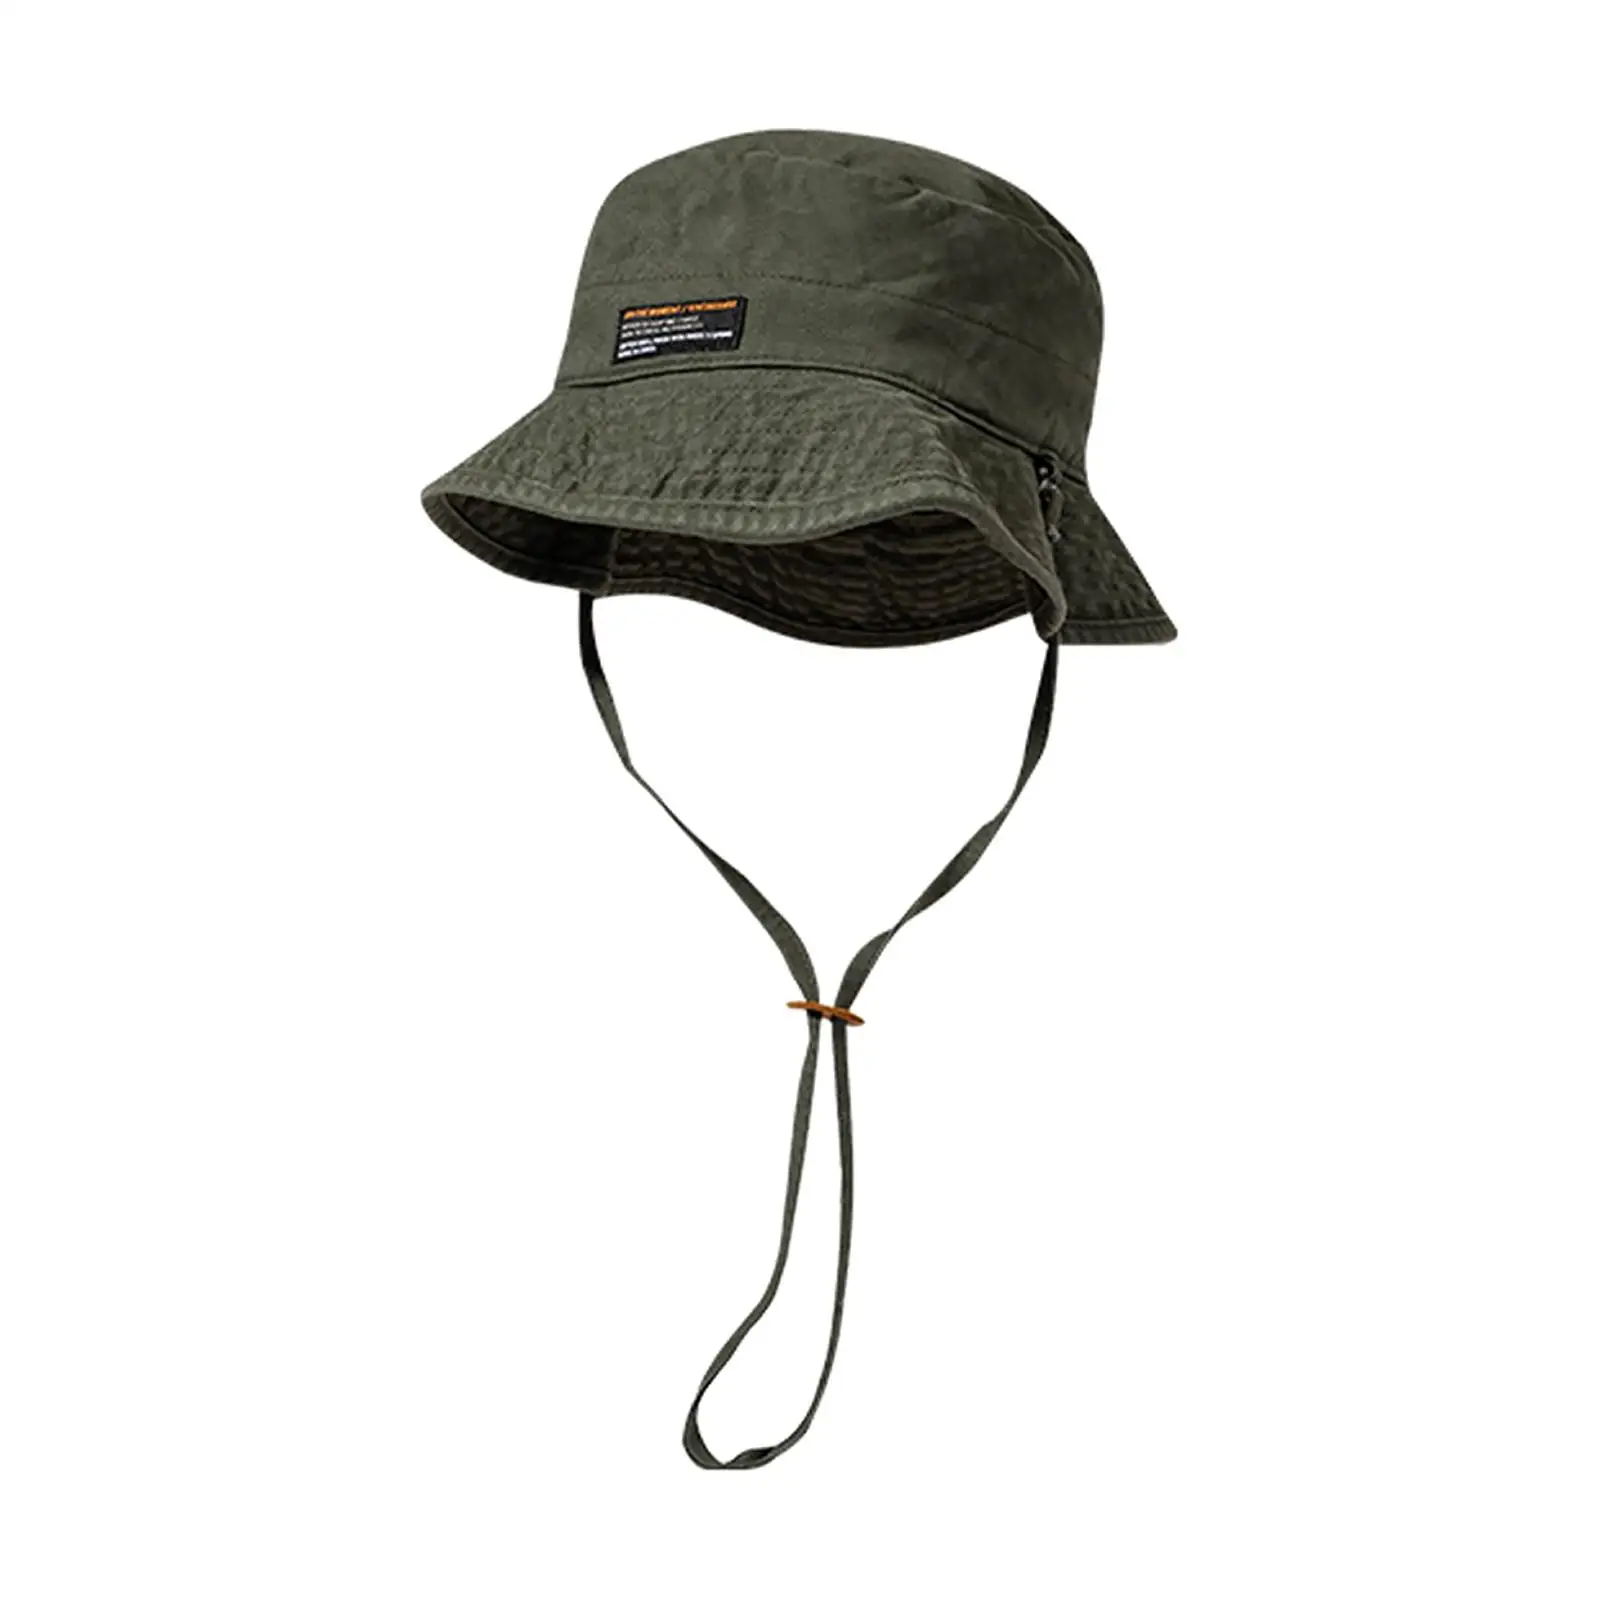 Fashion Bucket Hat Women Men Sun Protective Fisherman Hats Climbing Hiking